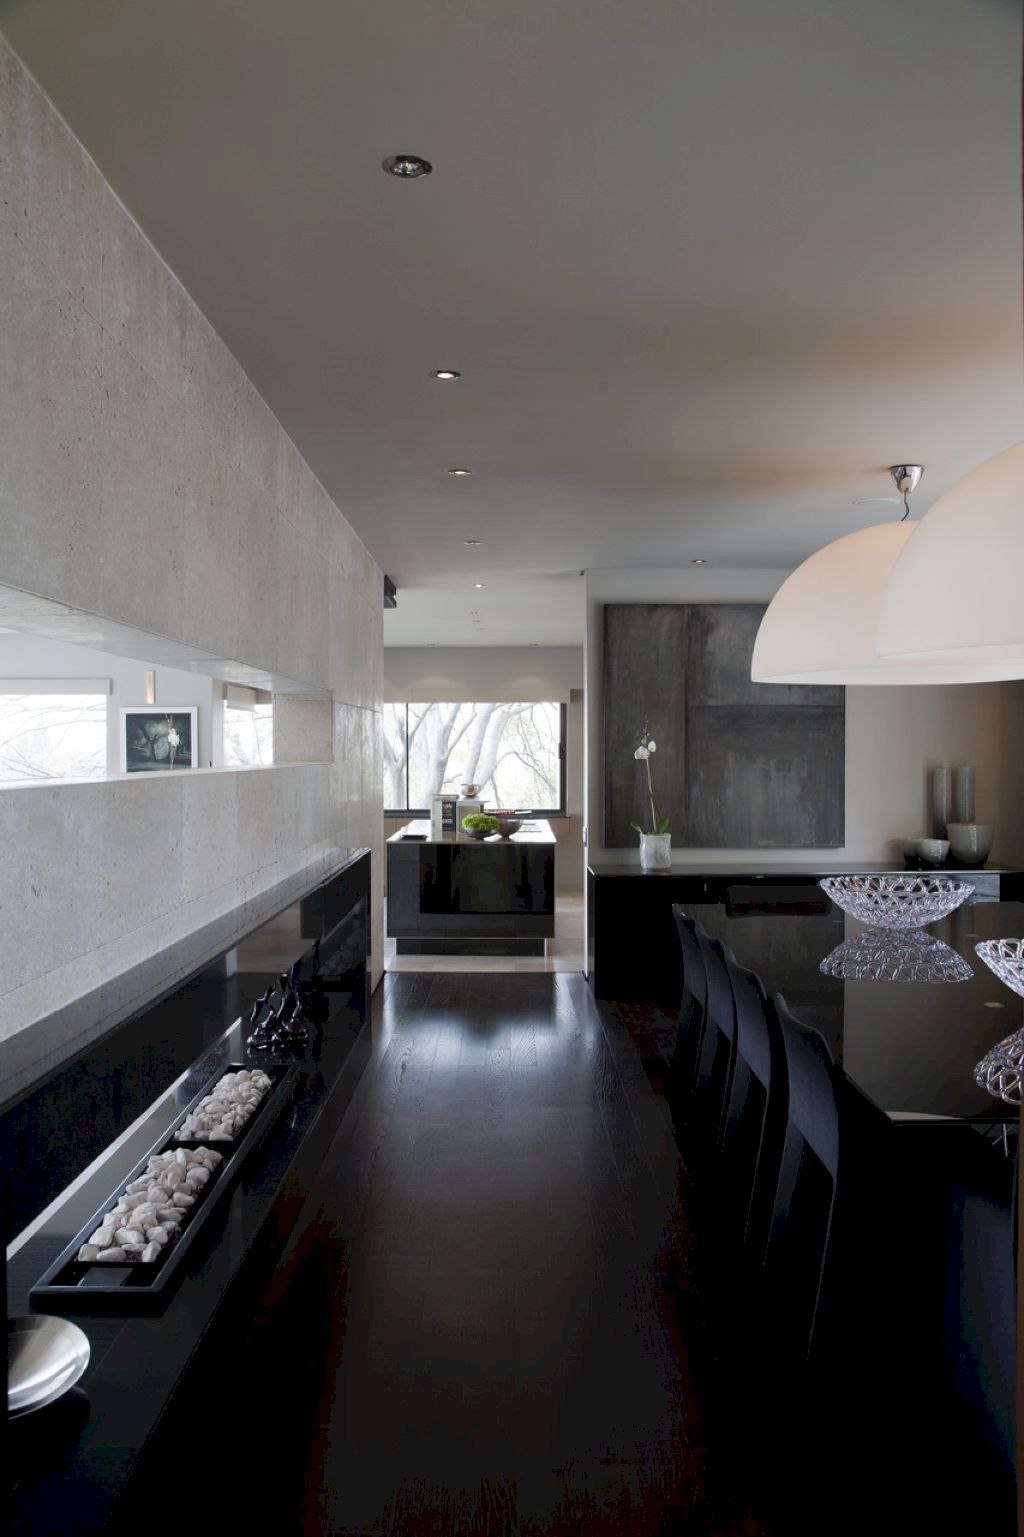 House Eccleston by Nico van der Meulen Architects